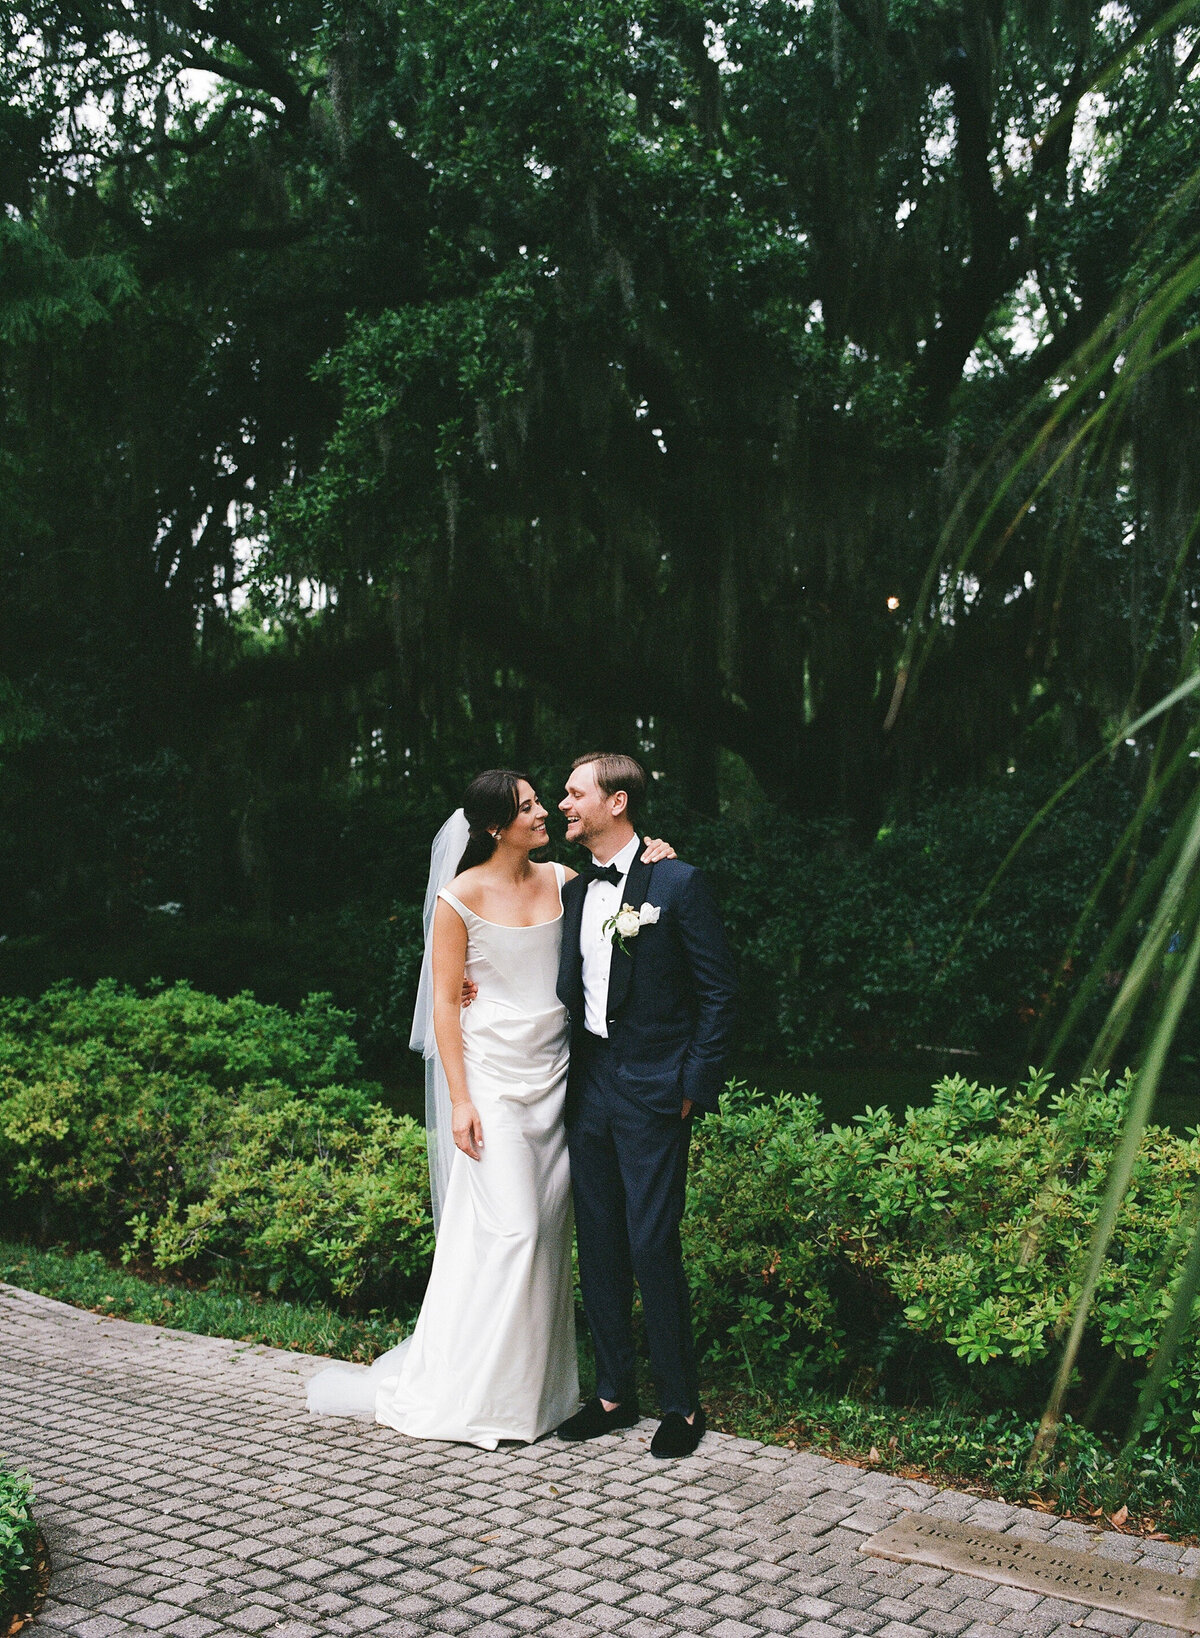 Elizabeth + Drew - NOLA New Orleans Wedding - Luxury Wedding Planner - Michelle Norwood Events